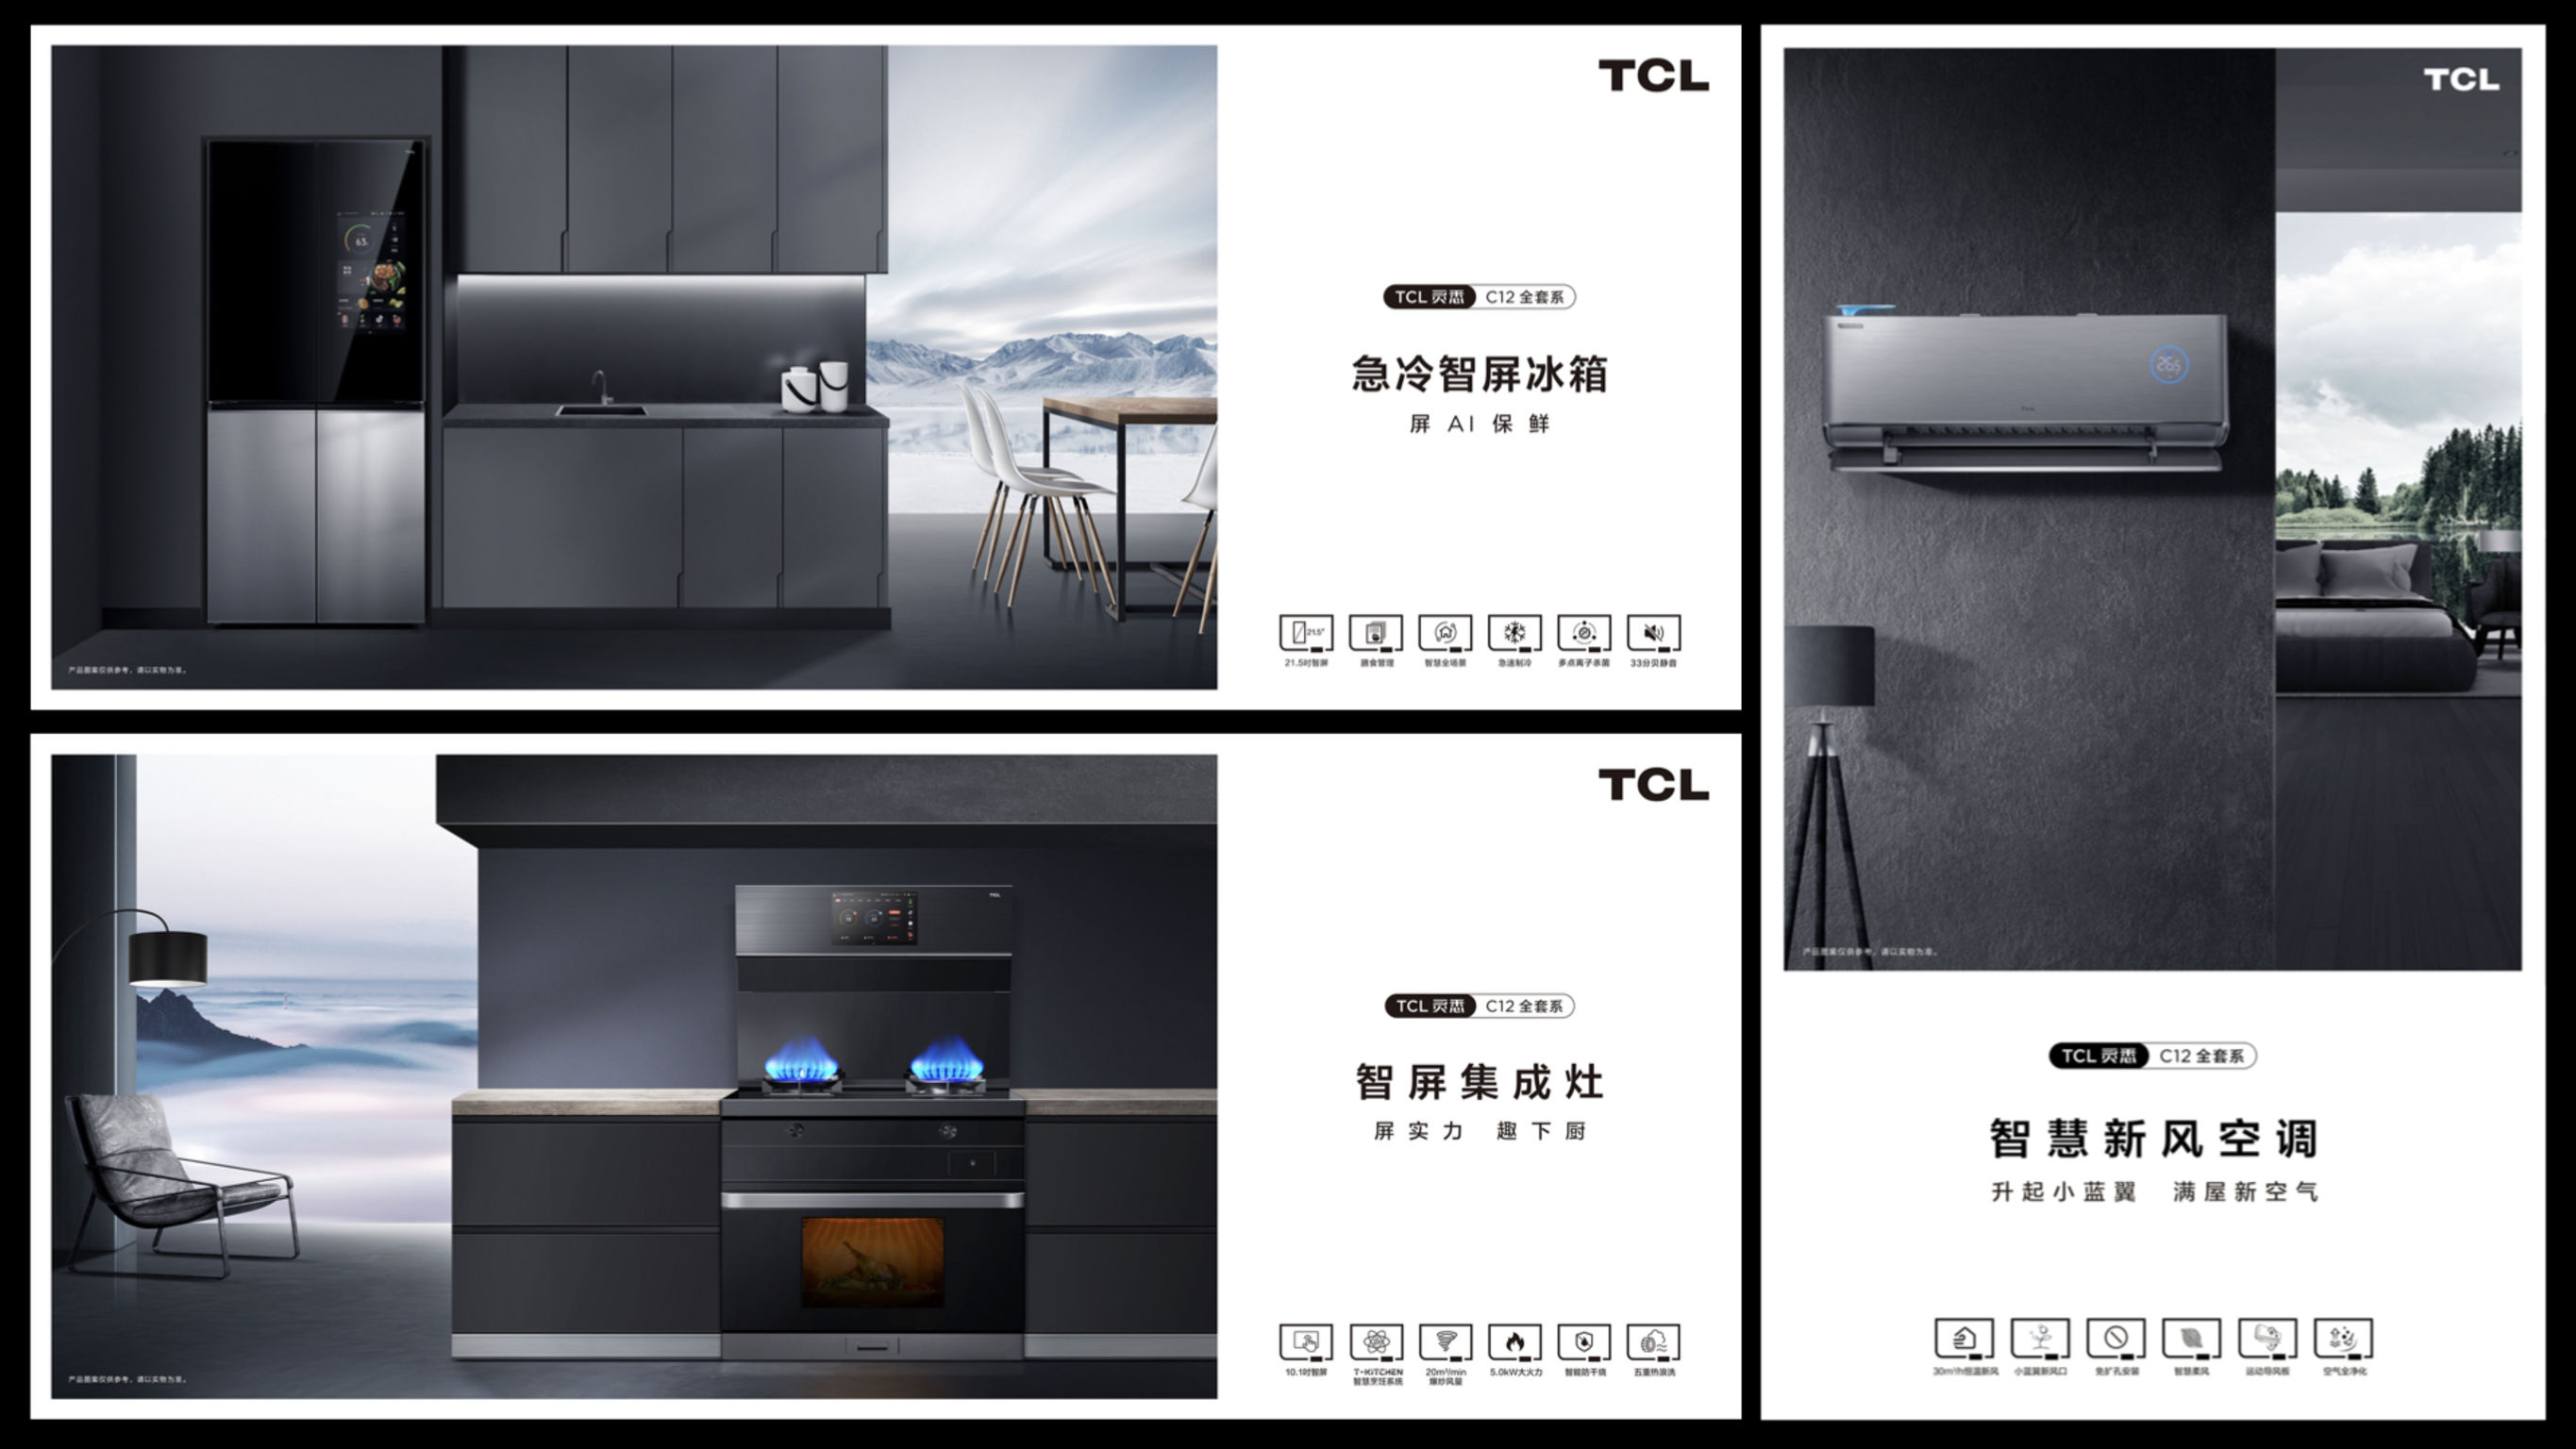 TCL C12 Full-set AIxIoT Home Appliances Promotion